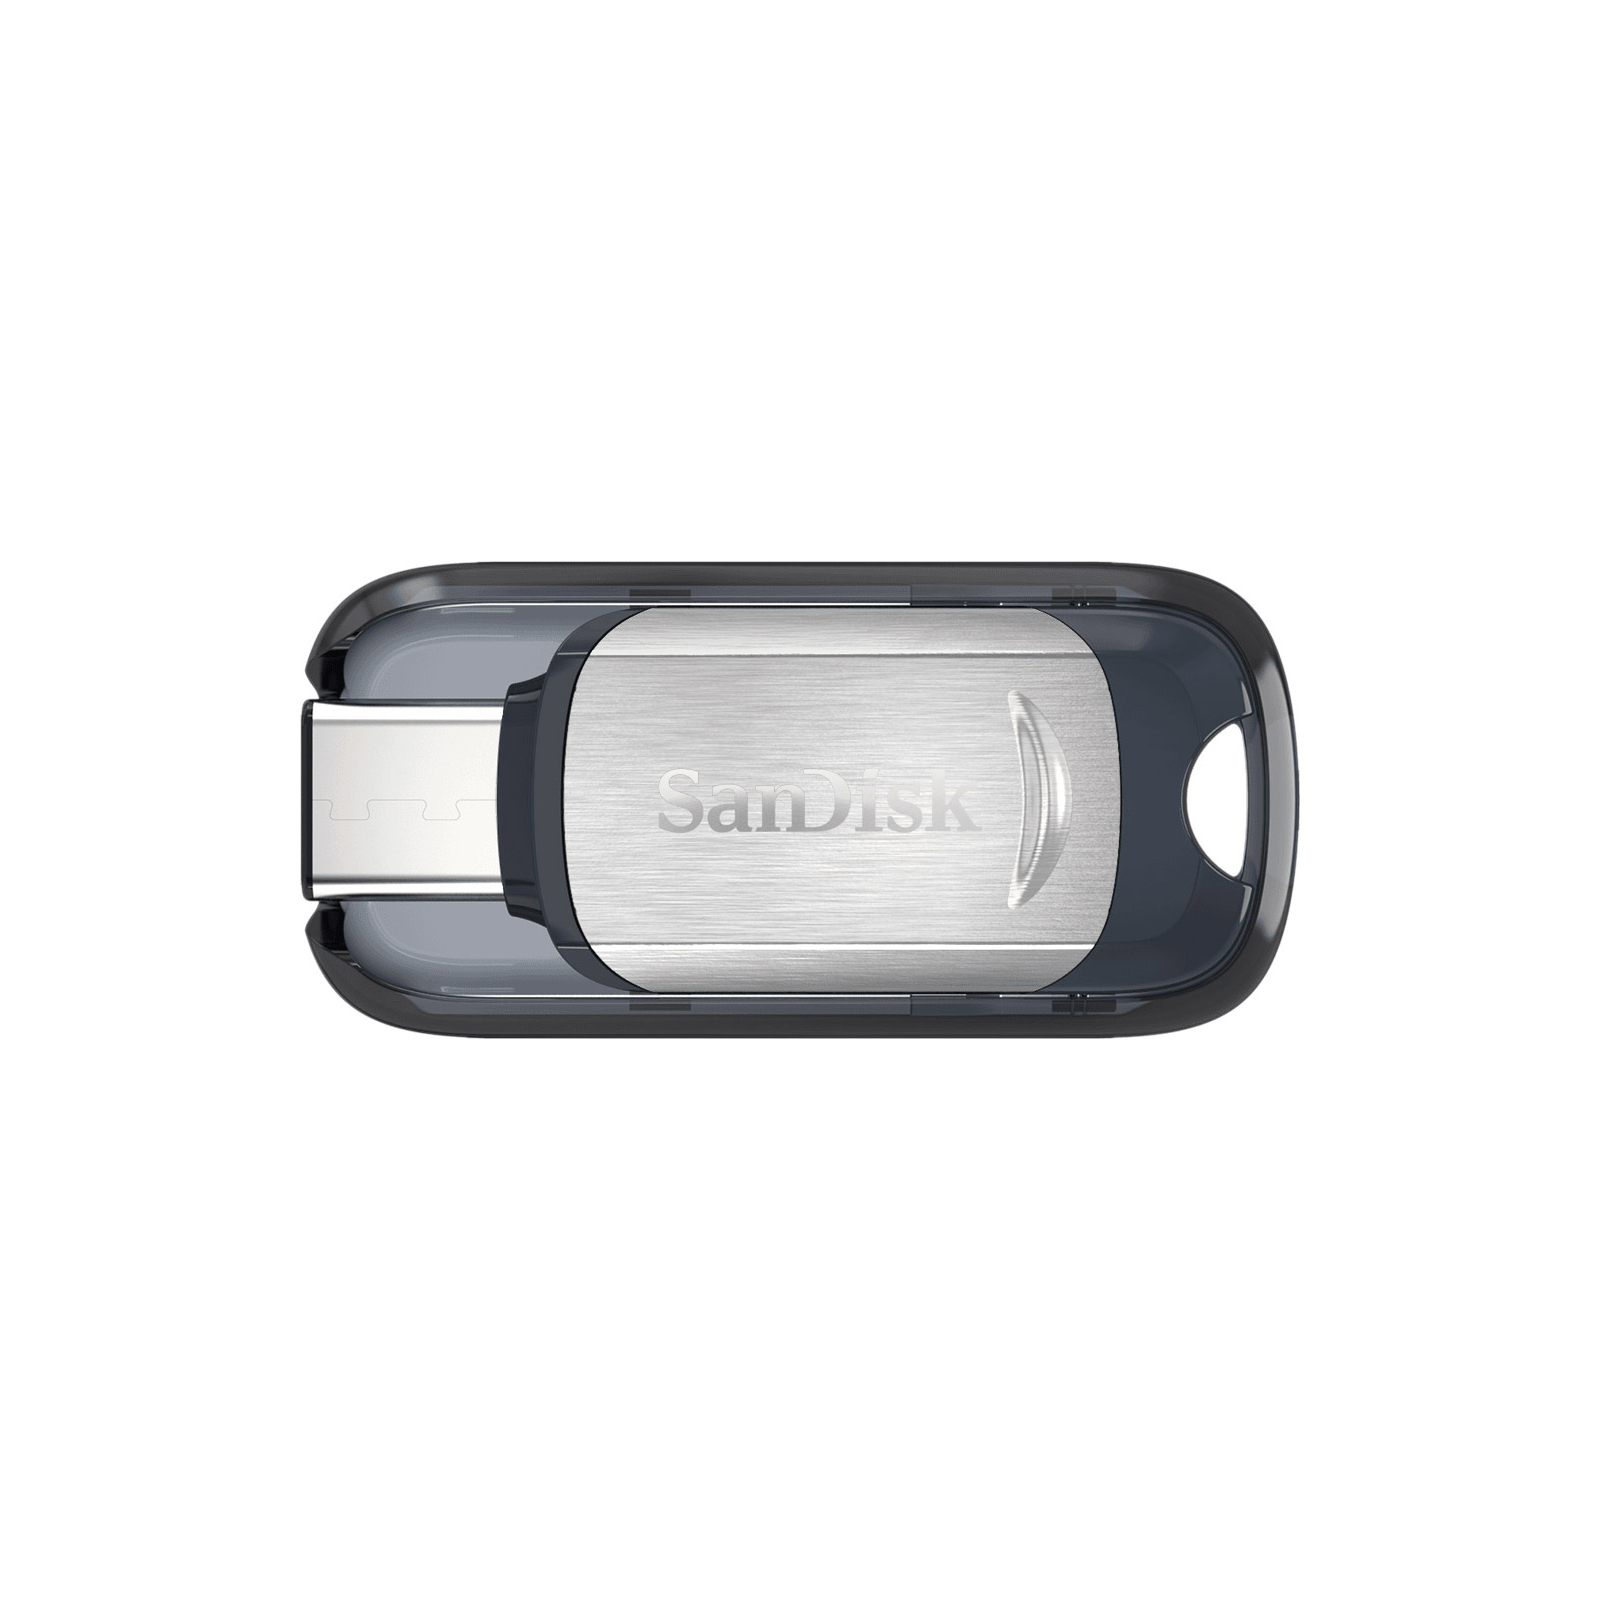 USB флеш накопитель SanDisk 64GB Ultra Type C USB 3.1 (SDCZ450-064G-G46)